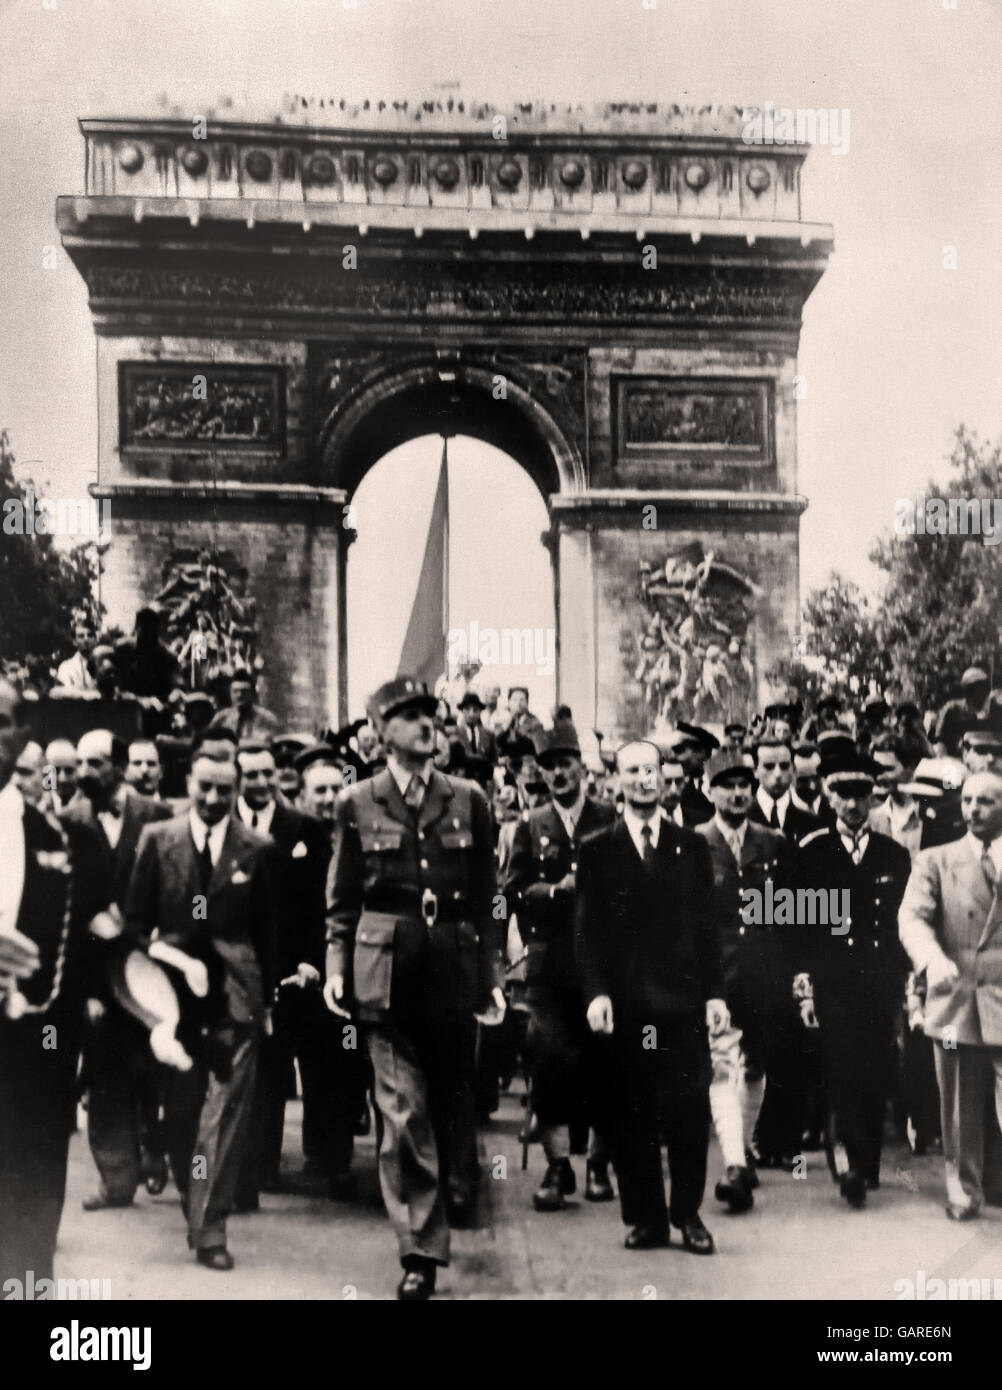 Le président Charles de Gaulle marchant dans Paris - Arc de Triomphe 25 août 1944 France ( Seconde Guerre mondiale 2 II 1949- 1945 L'Allemagne nazie ) Banque D'Images